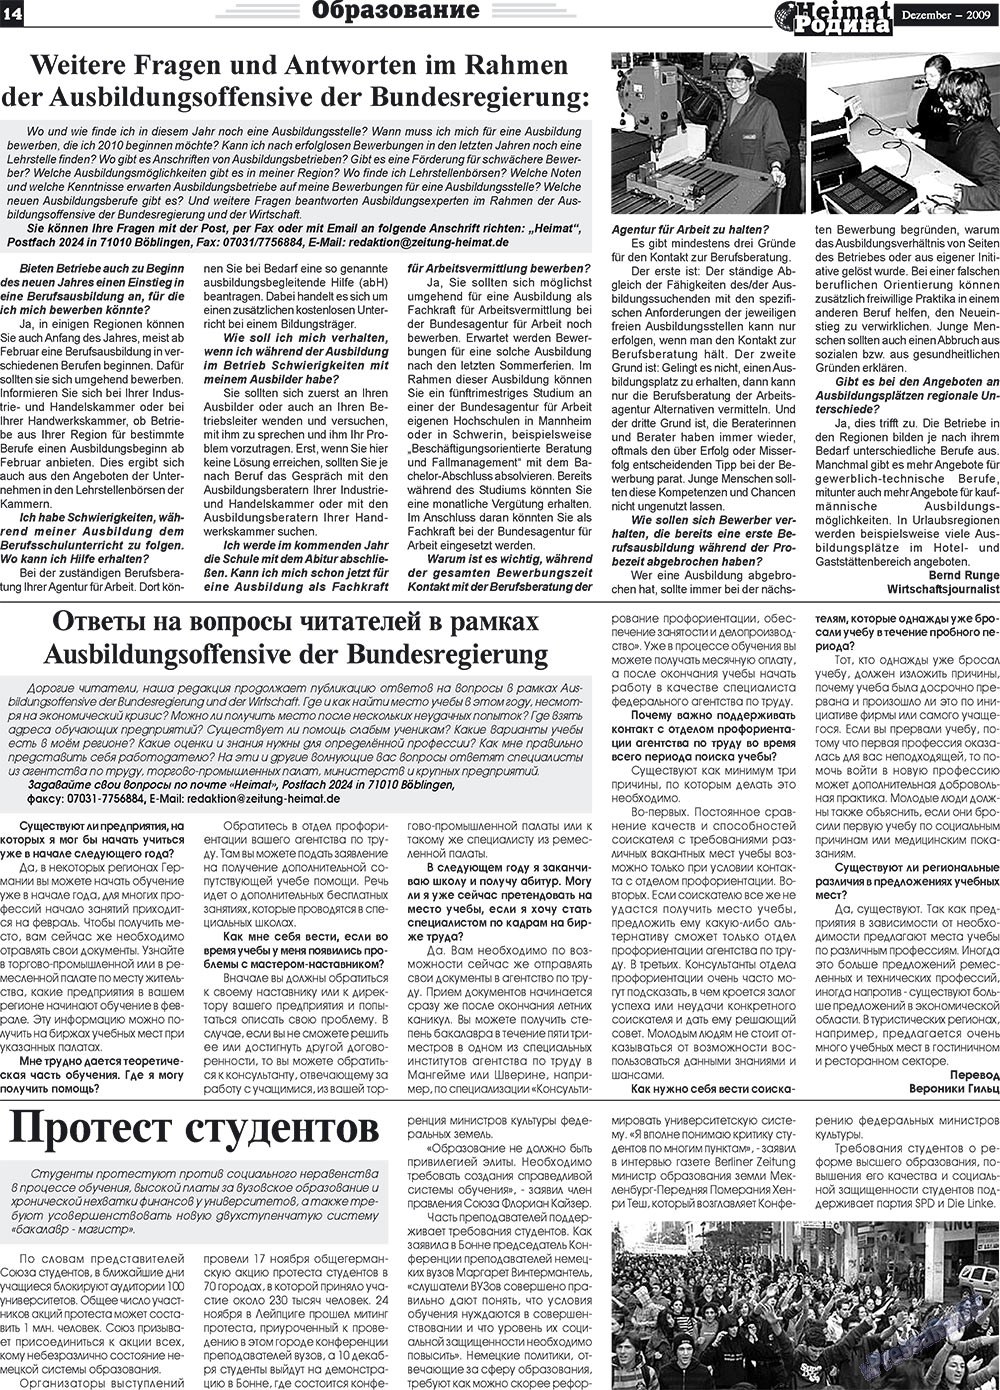 Heimat-Родина (газета). 2009 год, номер 12, стр. 14